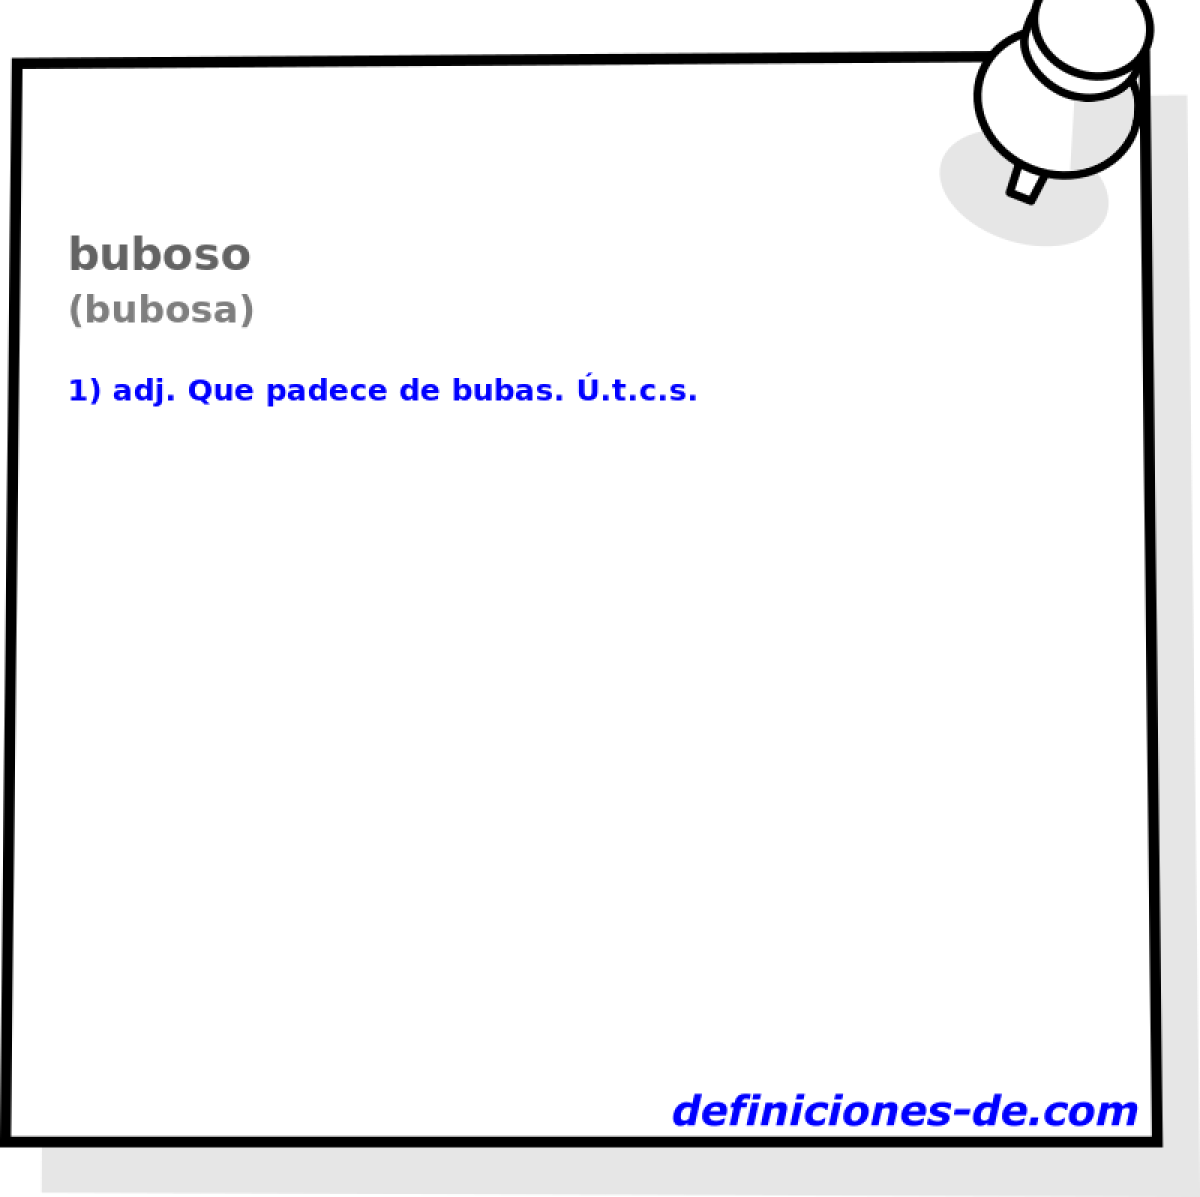 buboso (bubosa)